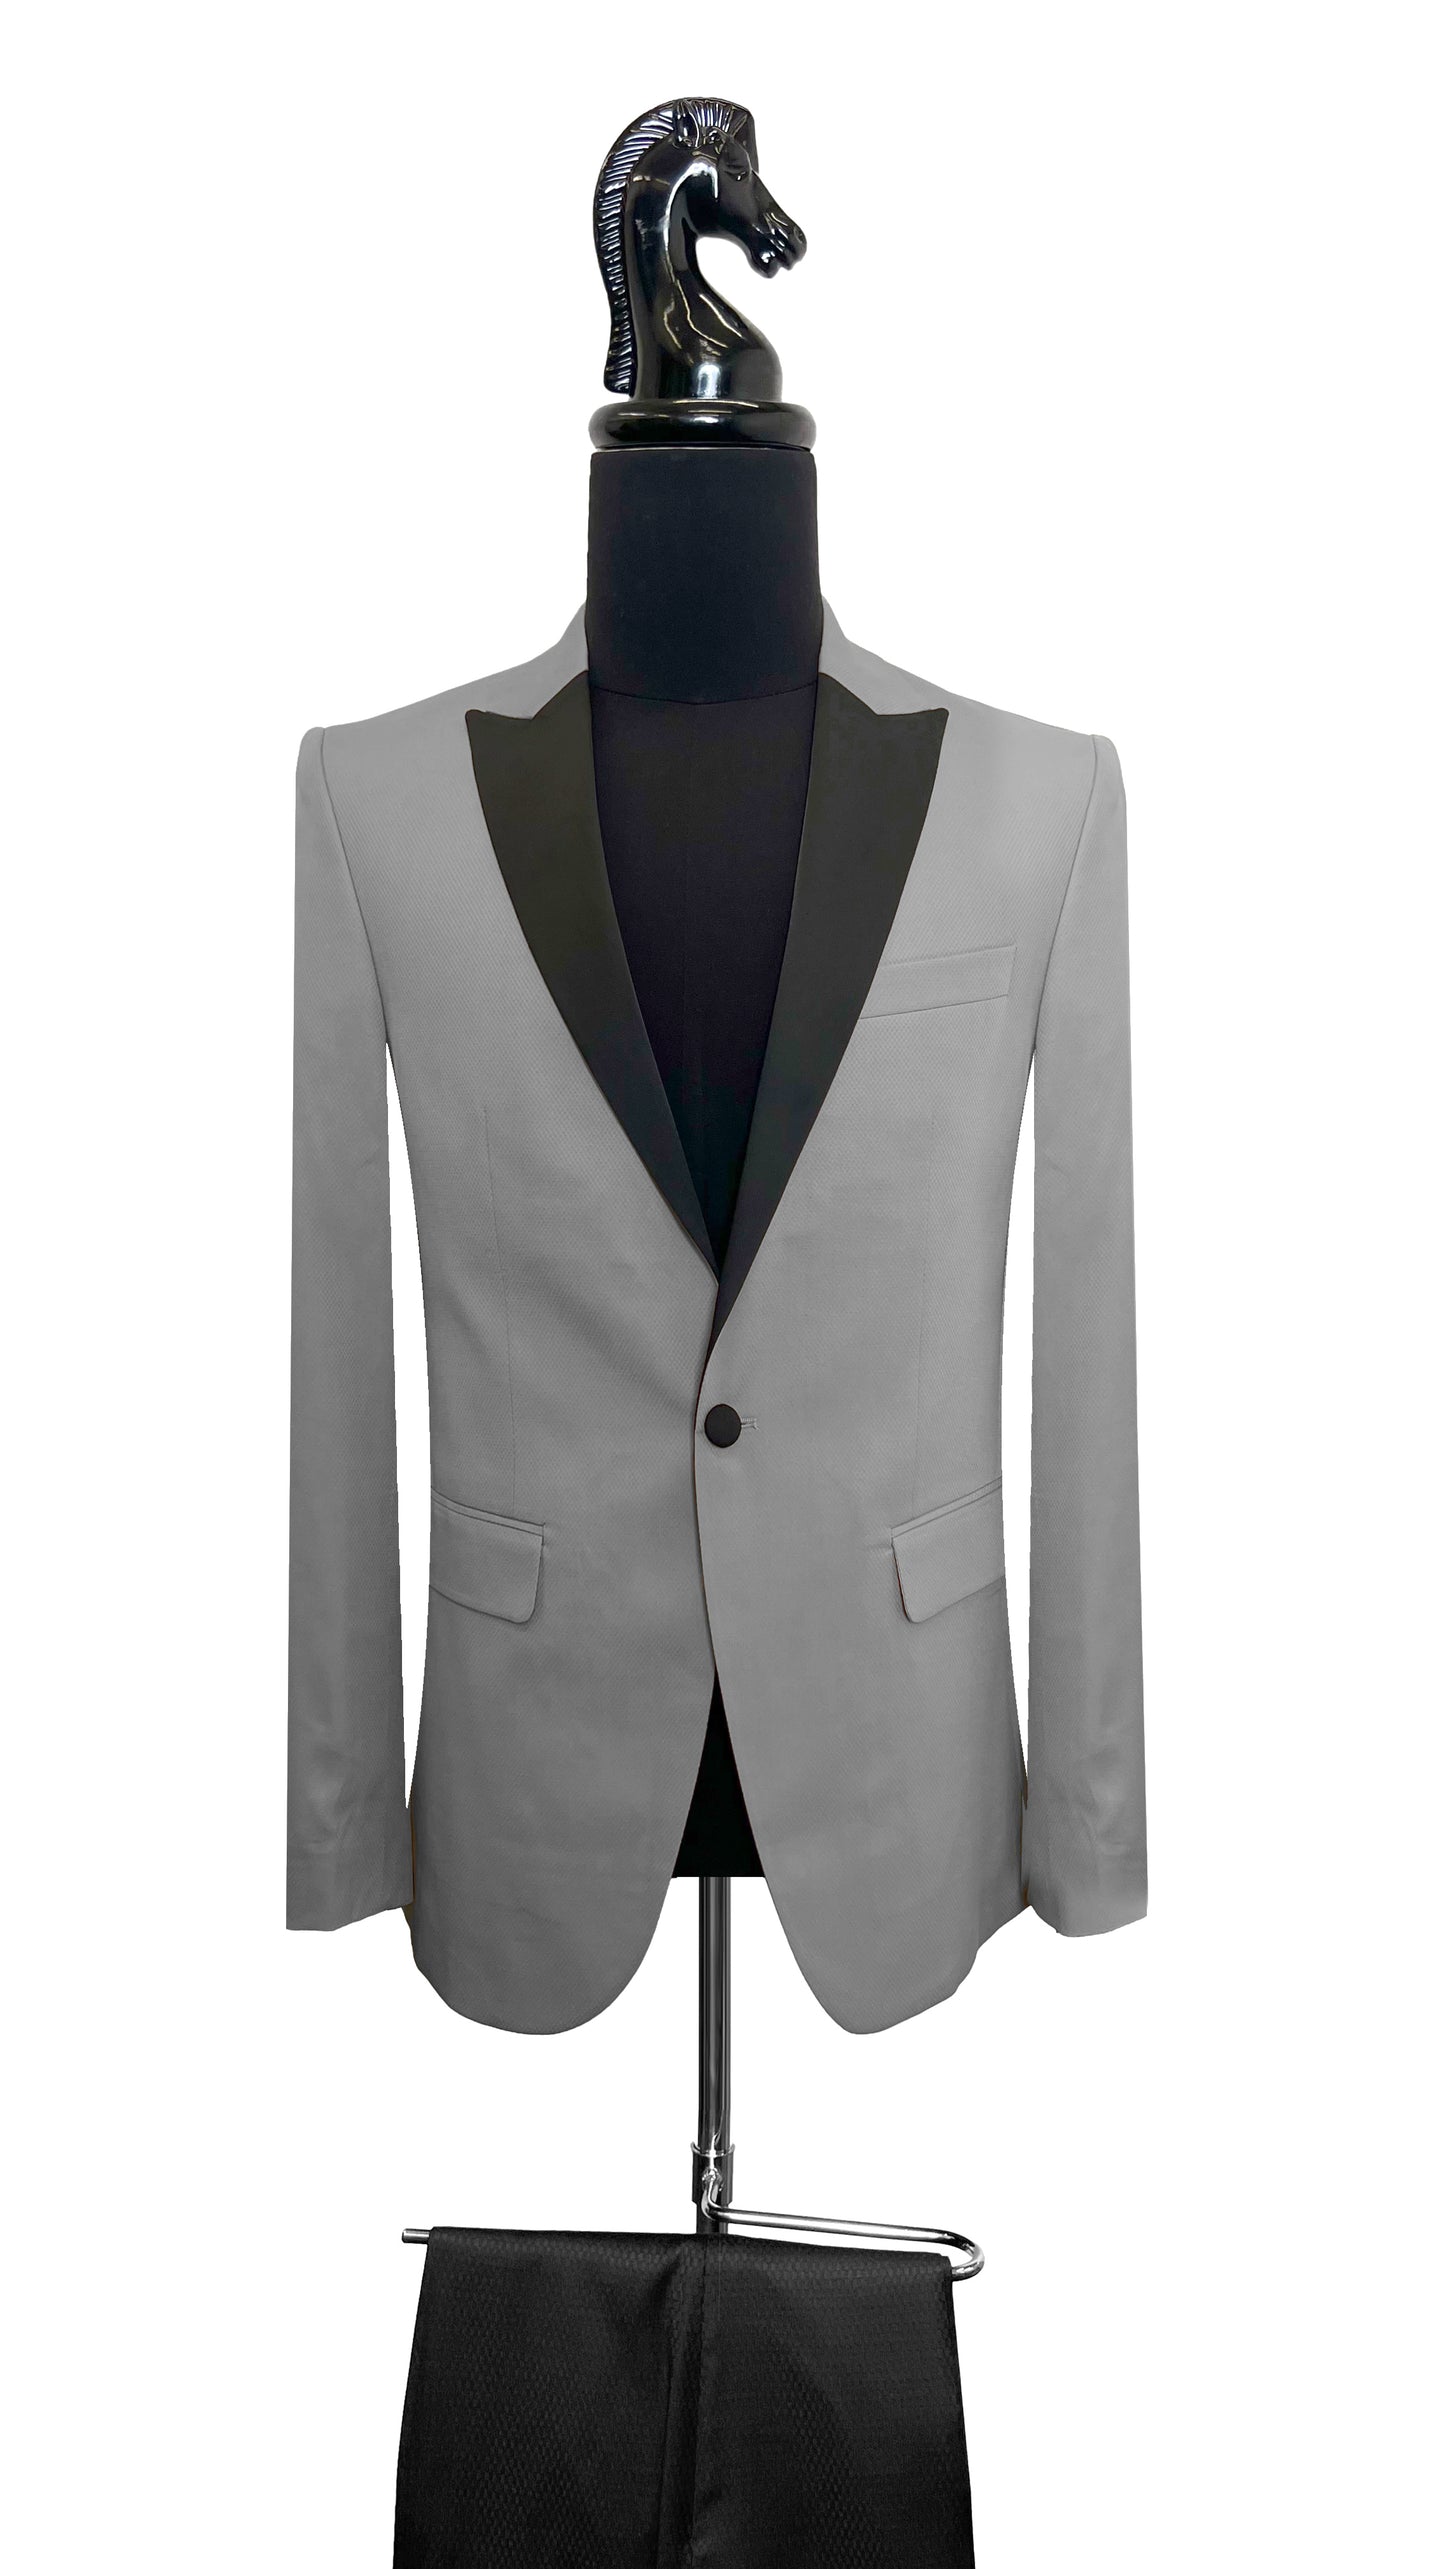 Men's Premium Classic Tuxedo by Vercini